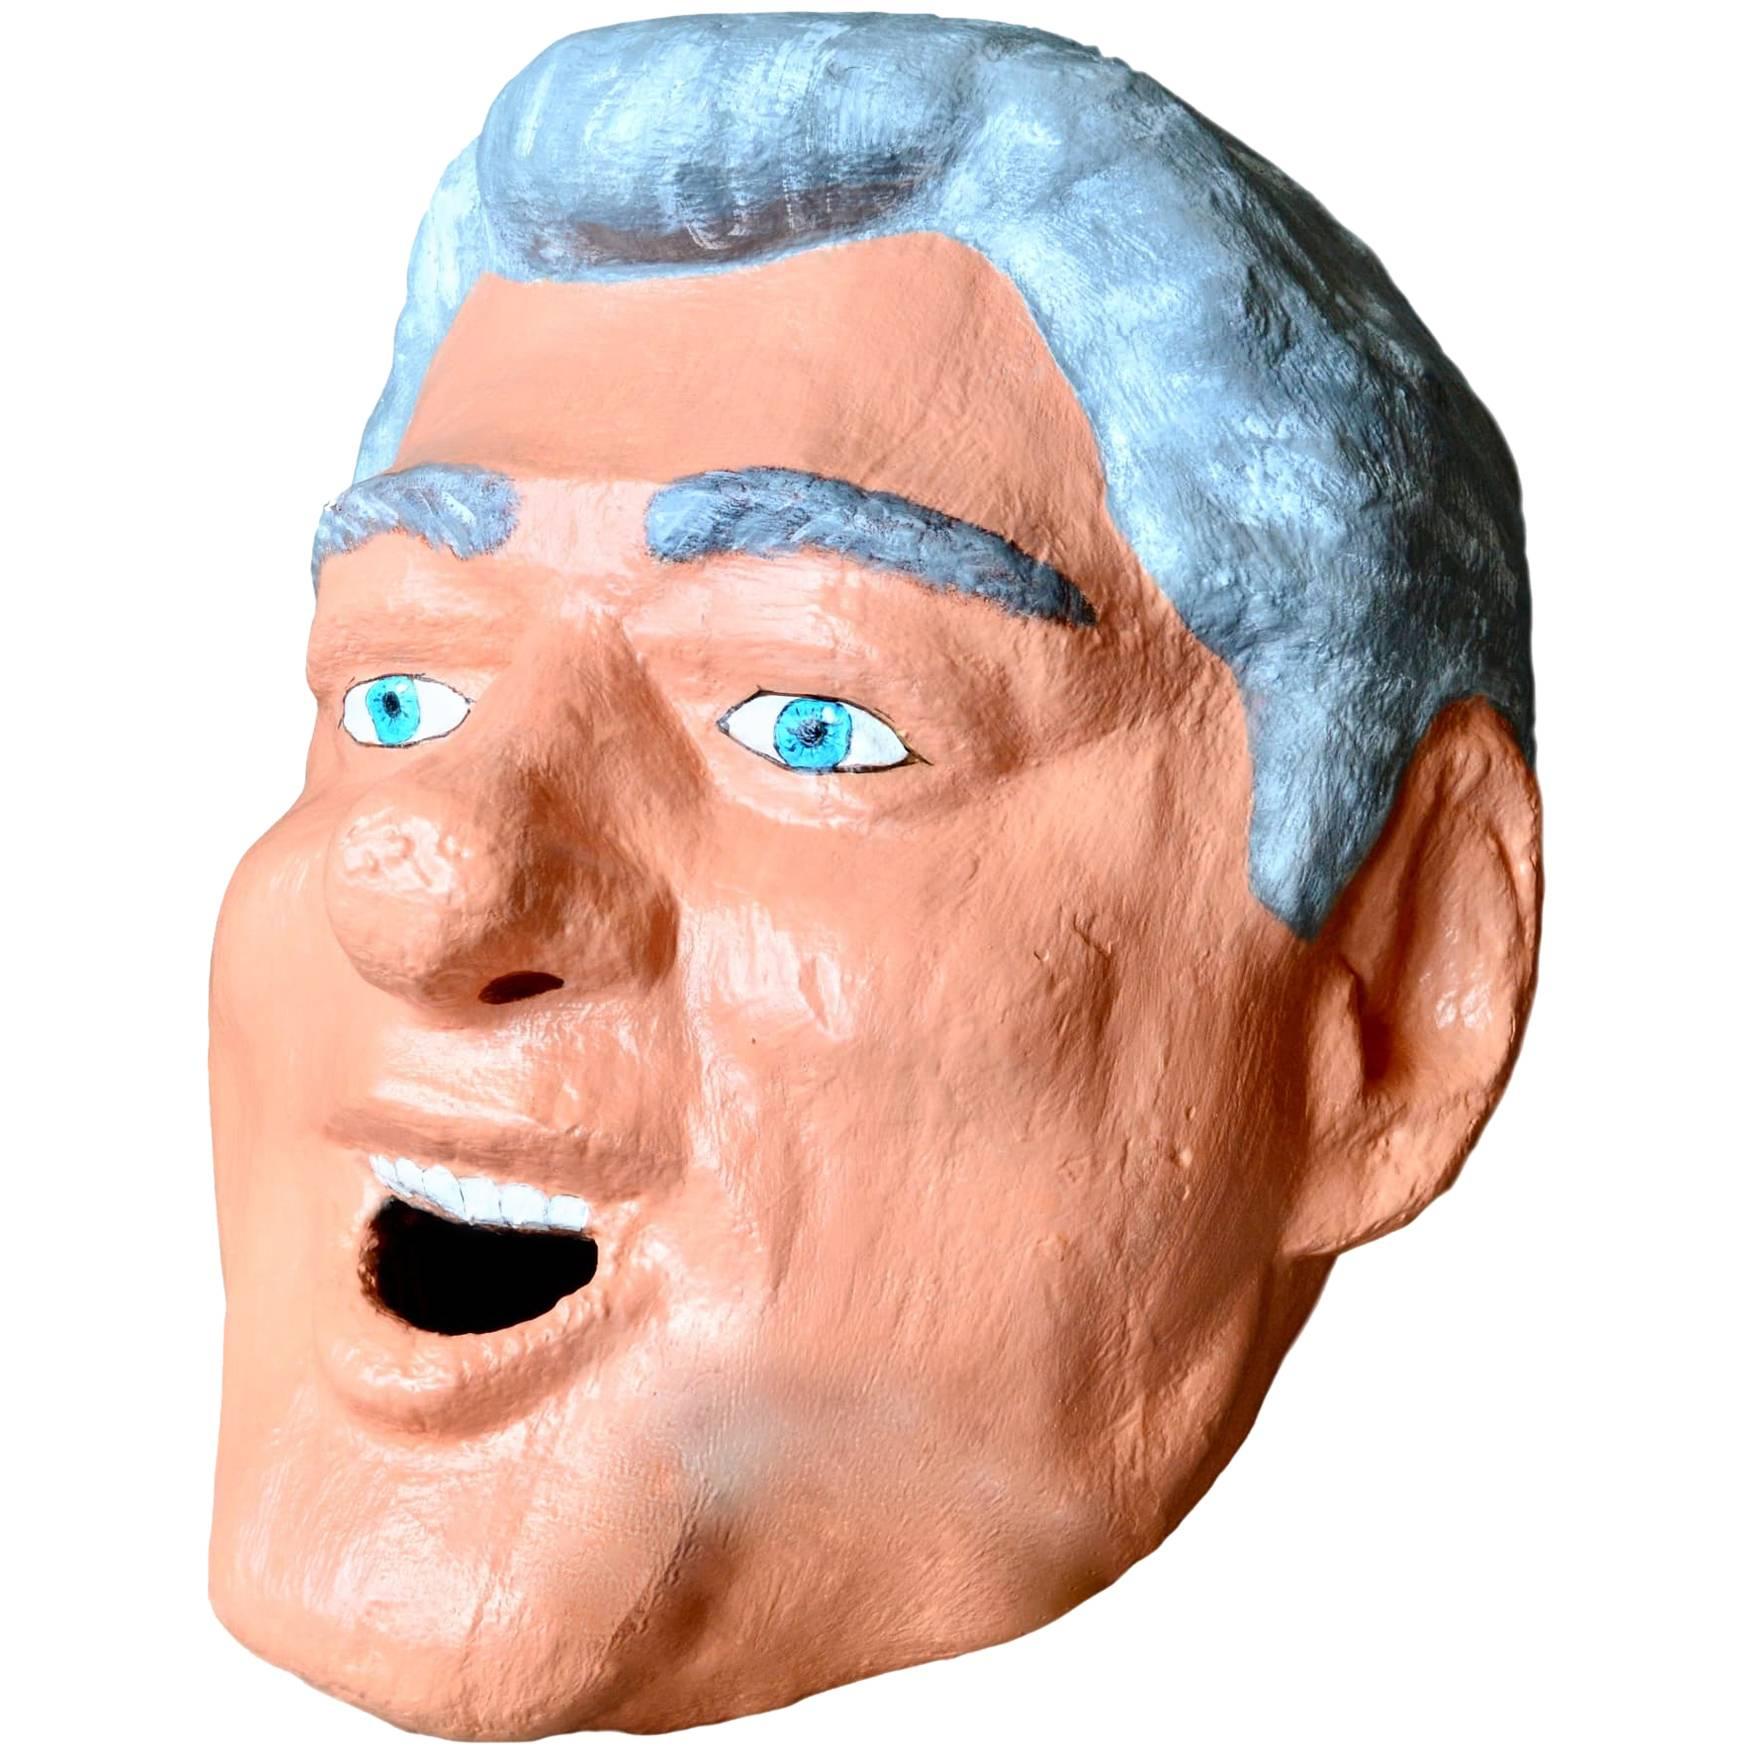 Tête sculpturale monumentale de Bill Clinton